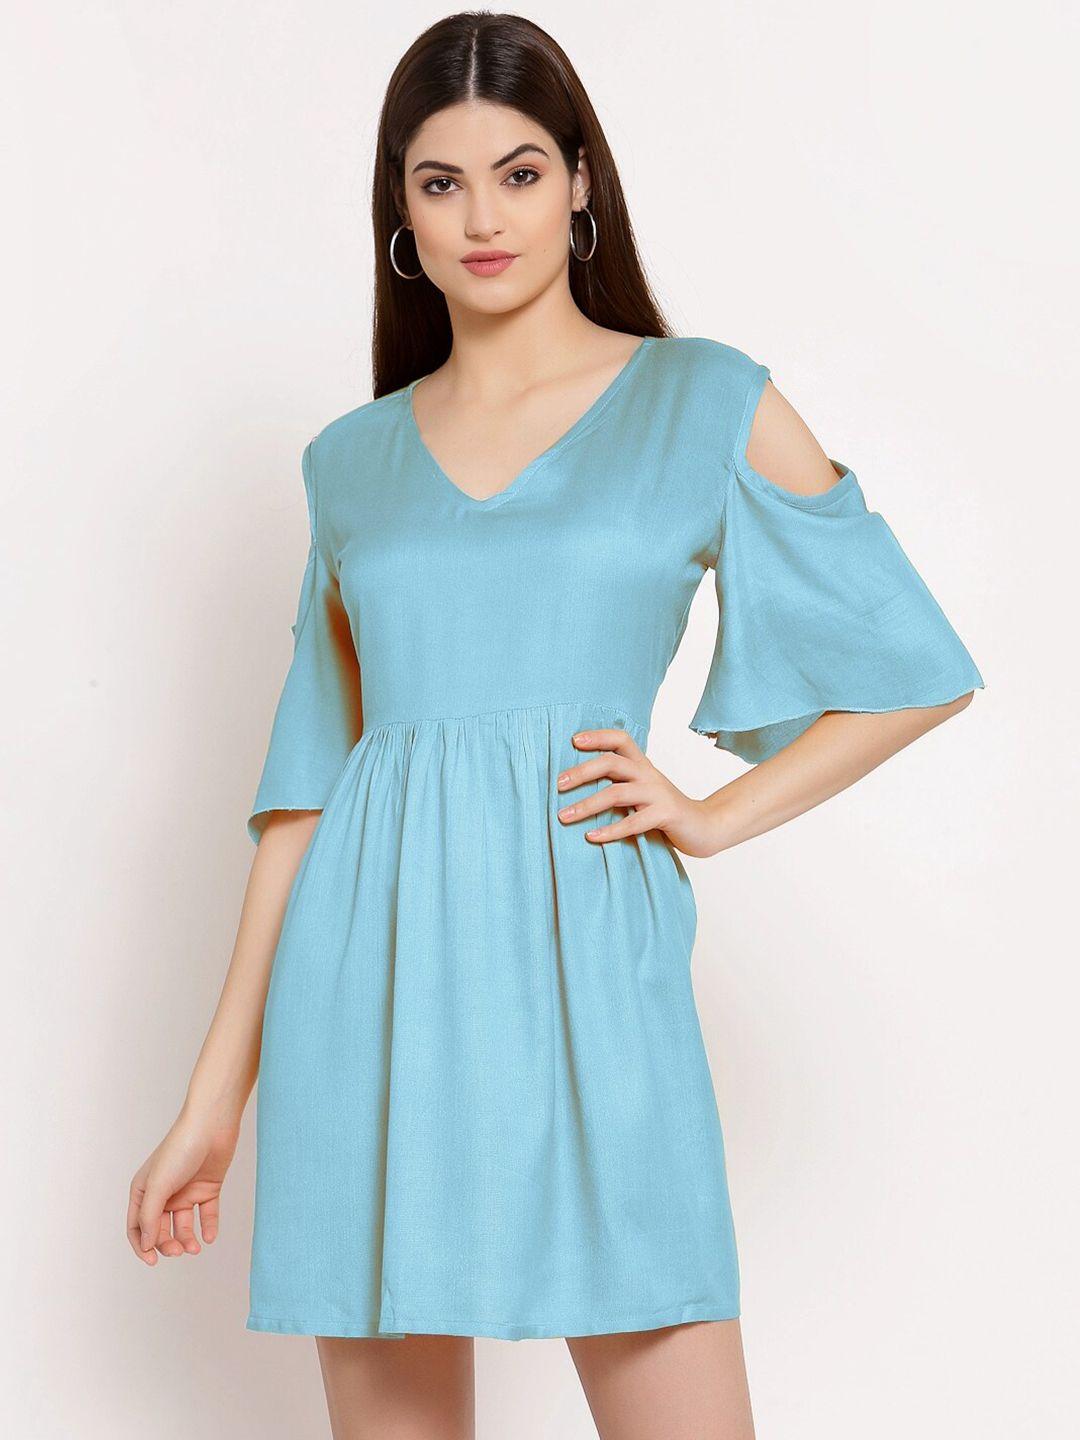 patrorna-cold-shoulder-fit-&-flare-cotton-dress